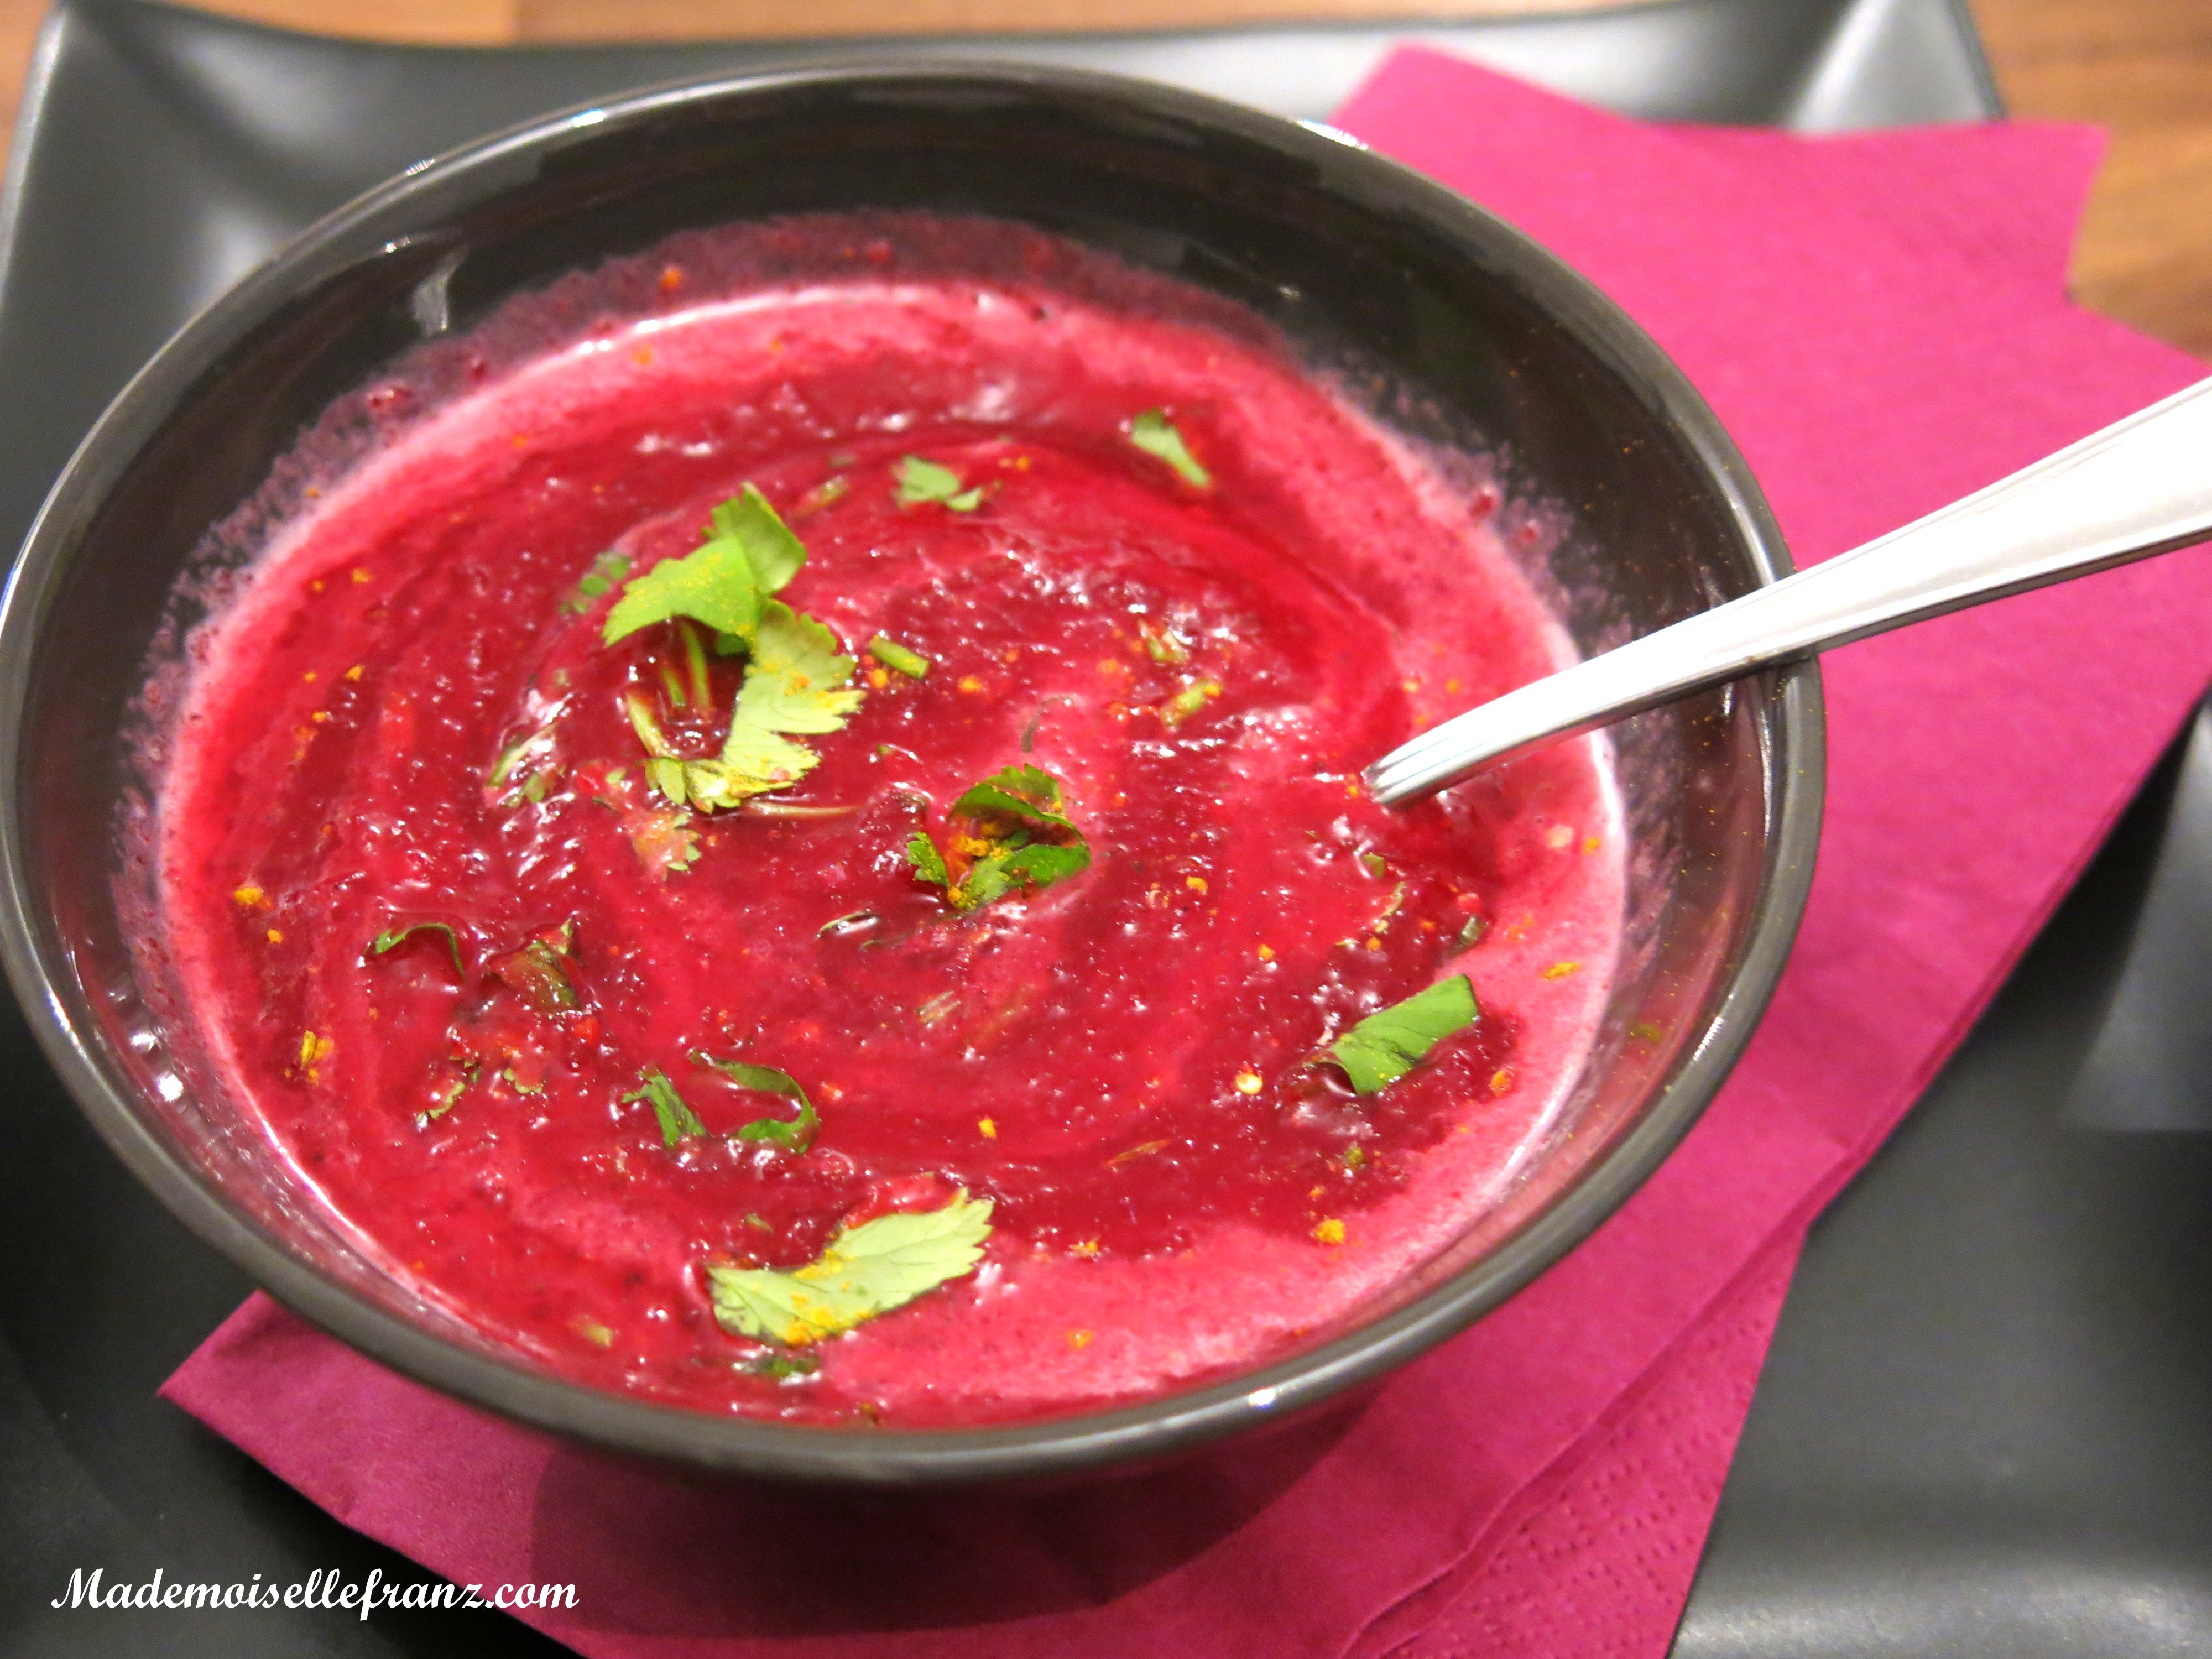 Valentinstagsmenü #1 : Rote Rüben Suppe mit Kokosmilch und Koriander ...